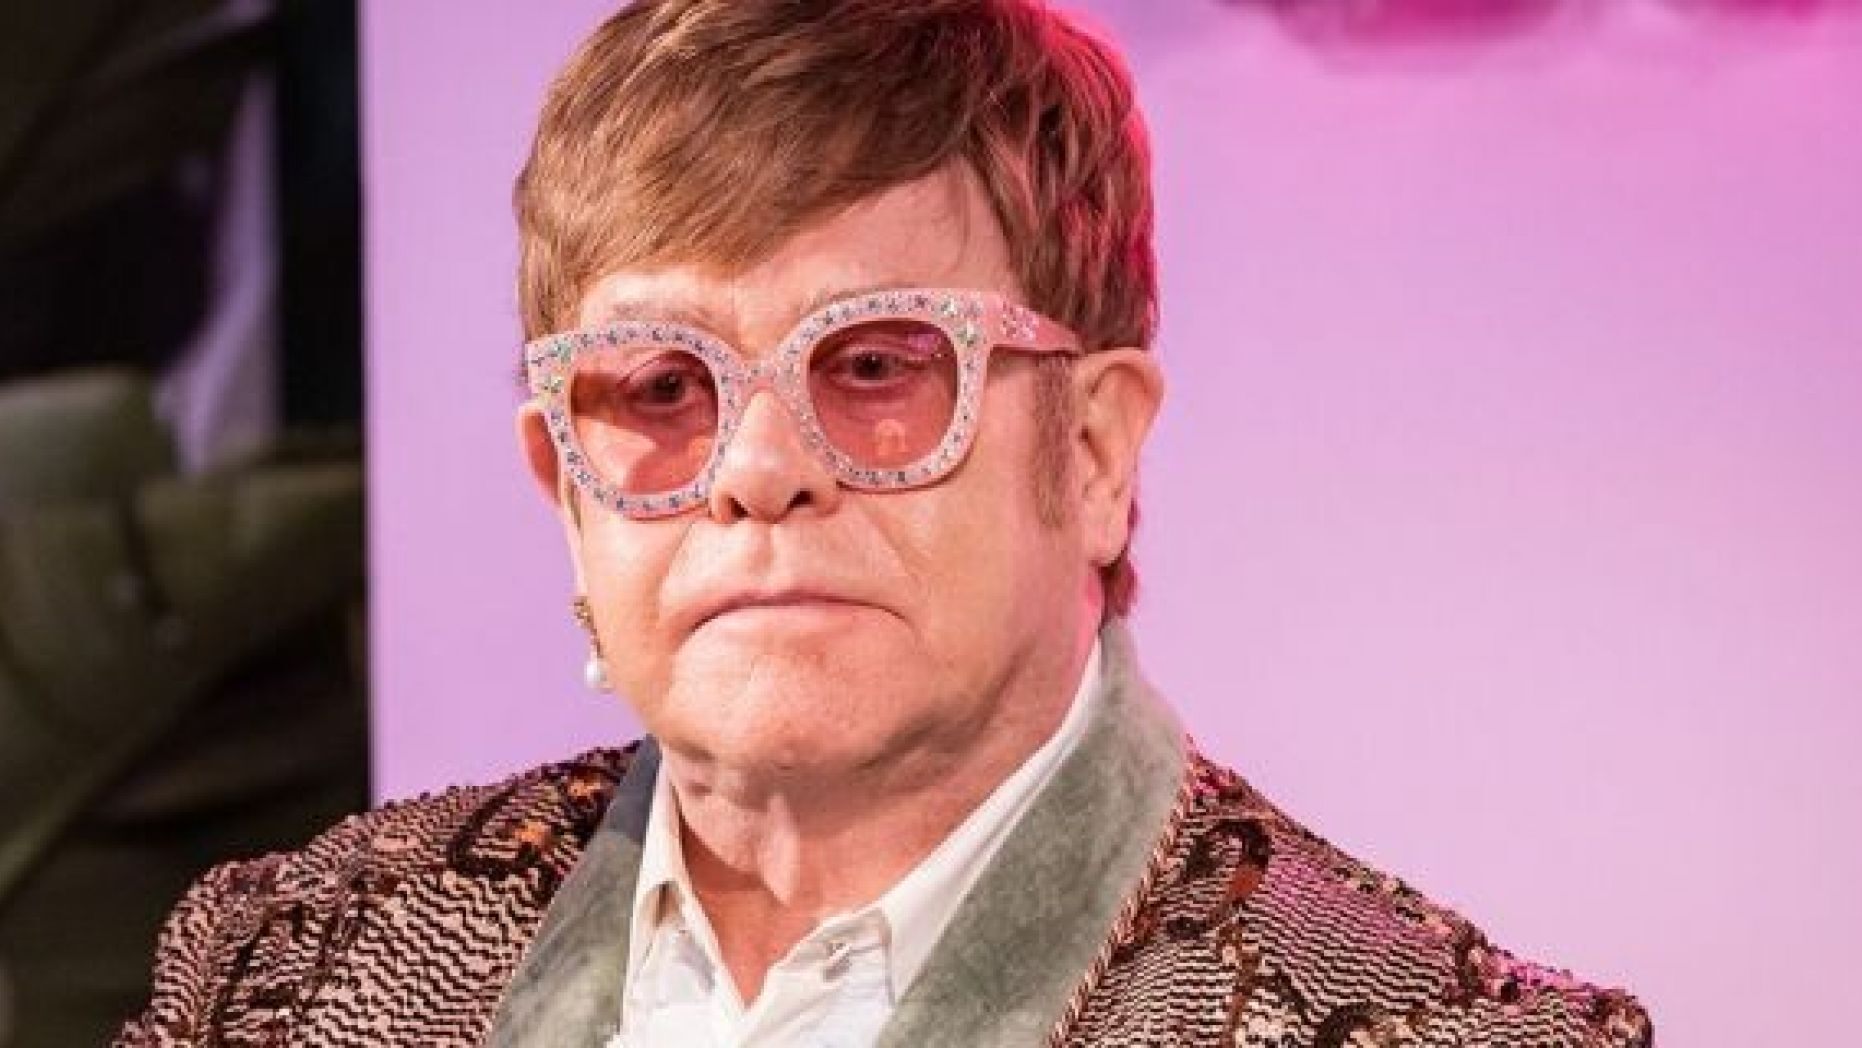 Las duras críticas a Elton John